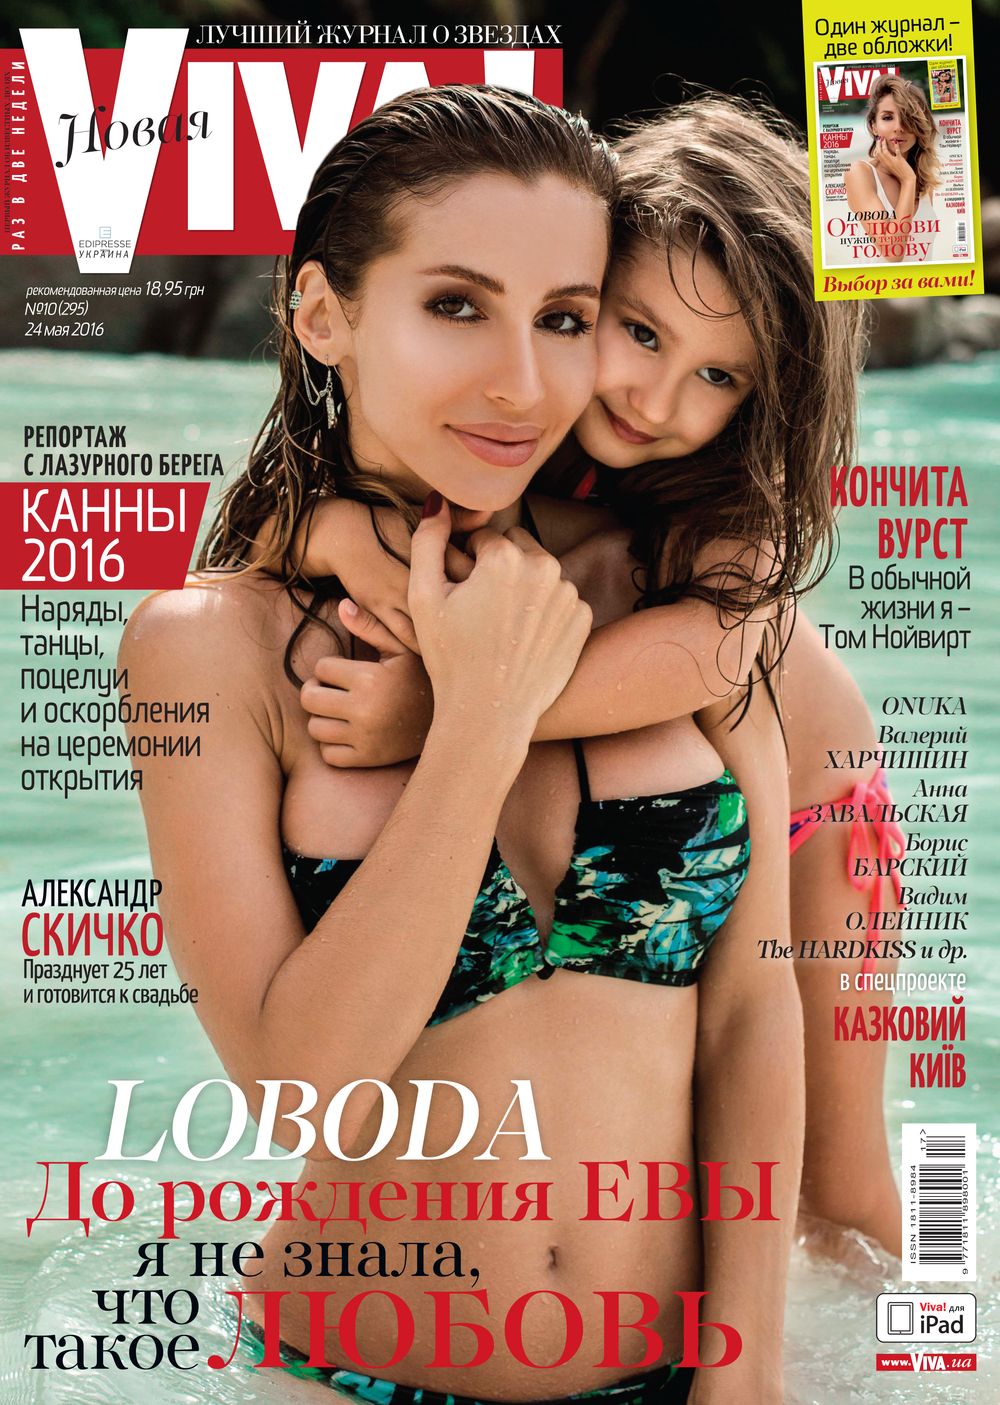 Loboda на обложке журнала Viva!